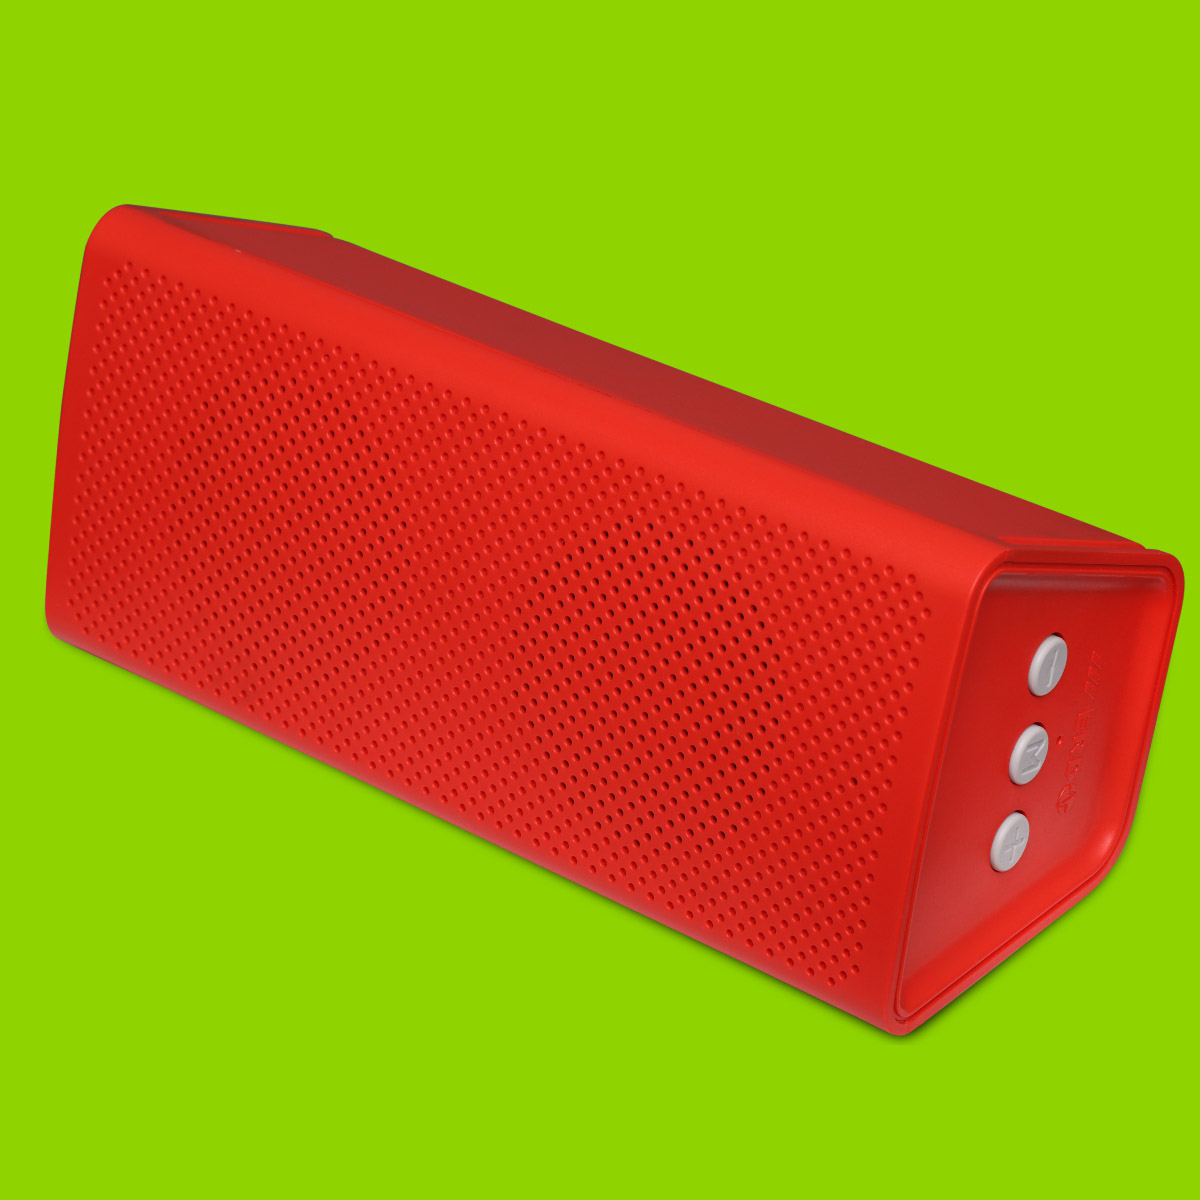 BTS-21 10W Bluetooth Speaker